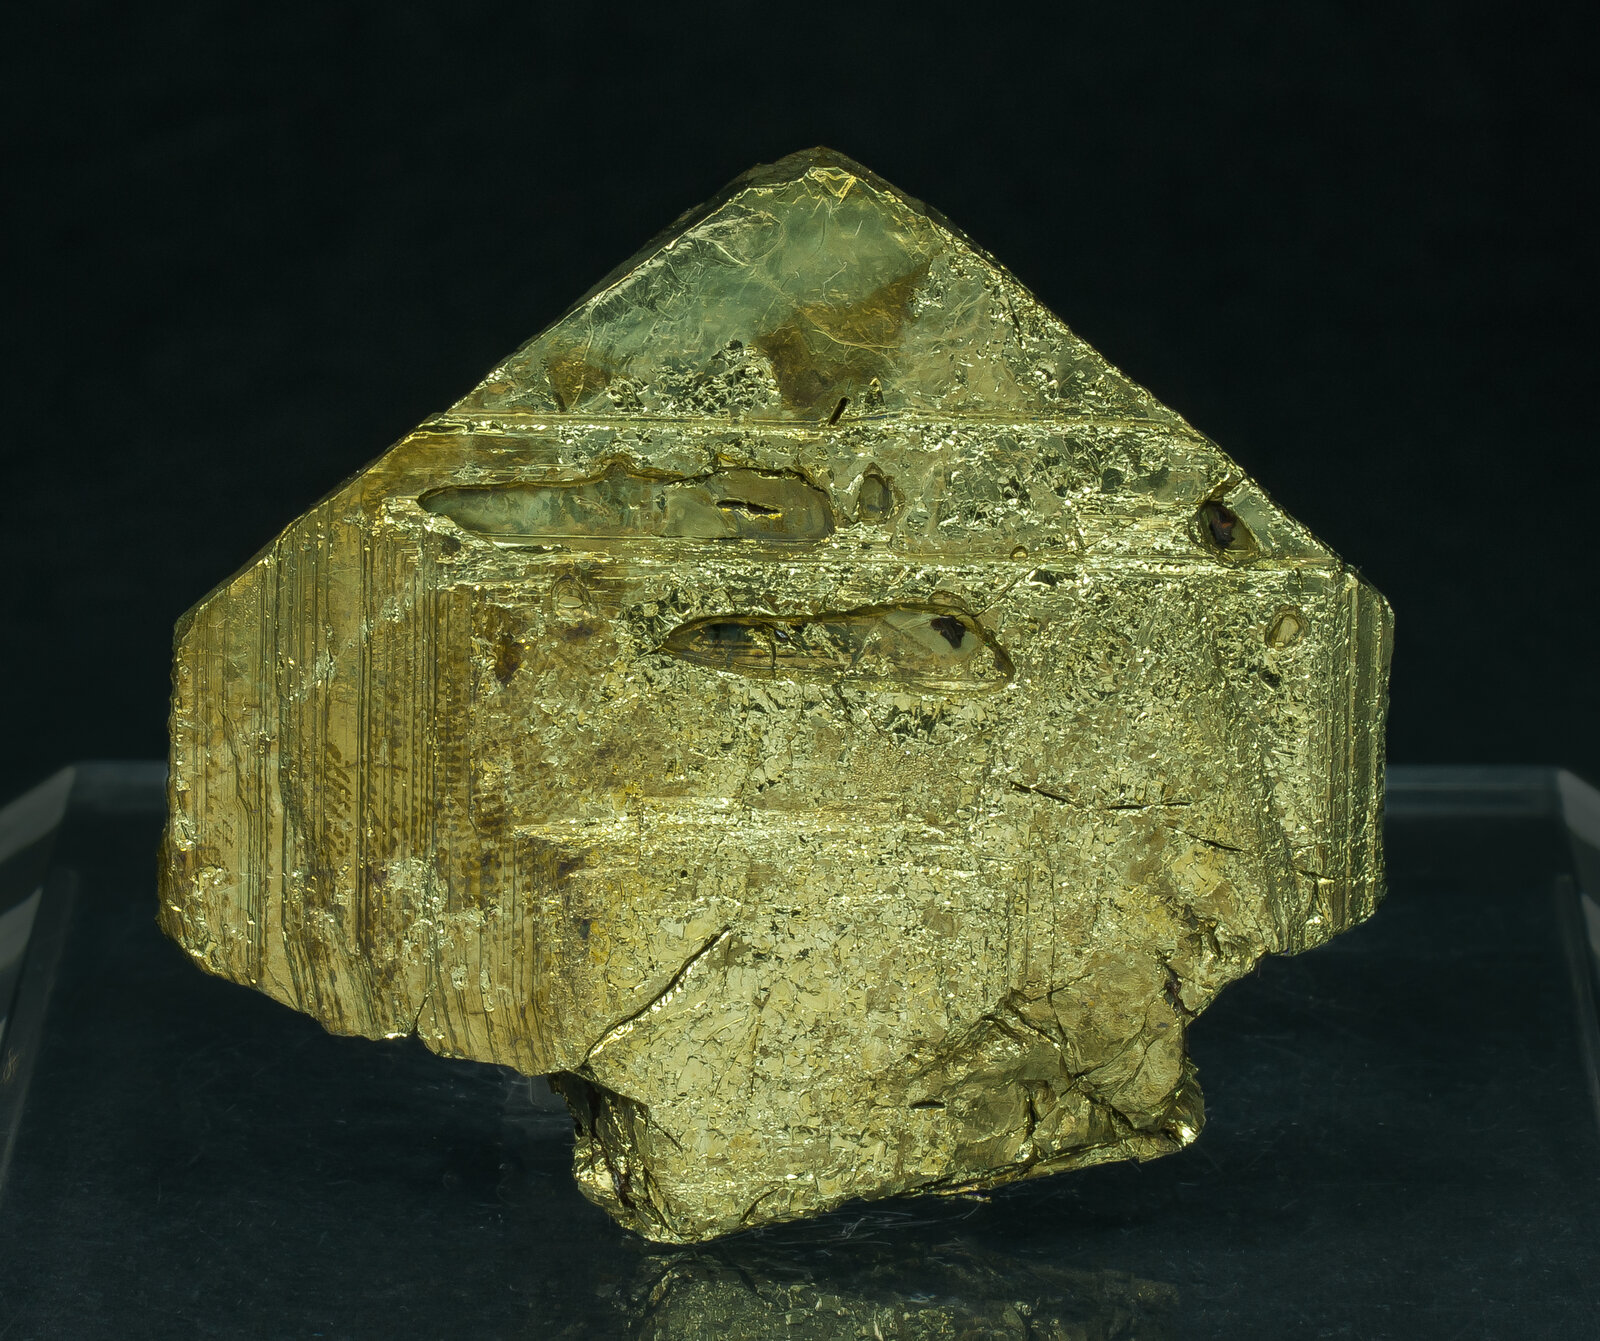 specimens/s_imagesAO9/Chalcopyrite-ETB91AO9f.jpg